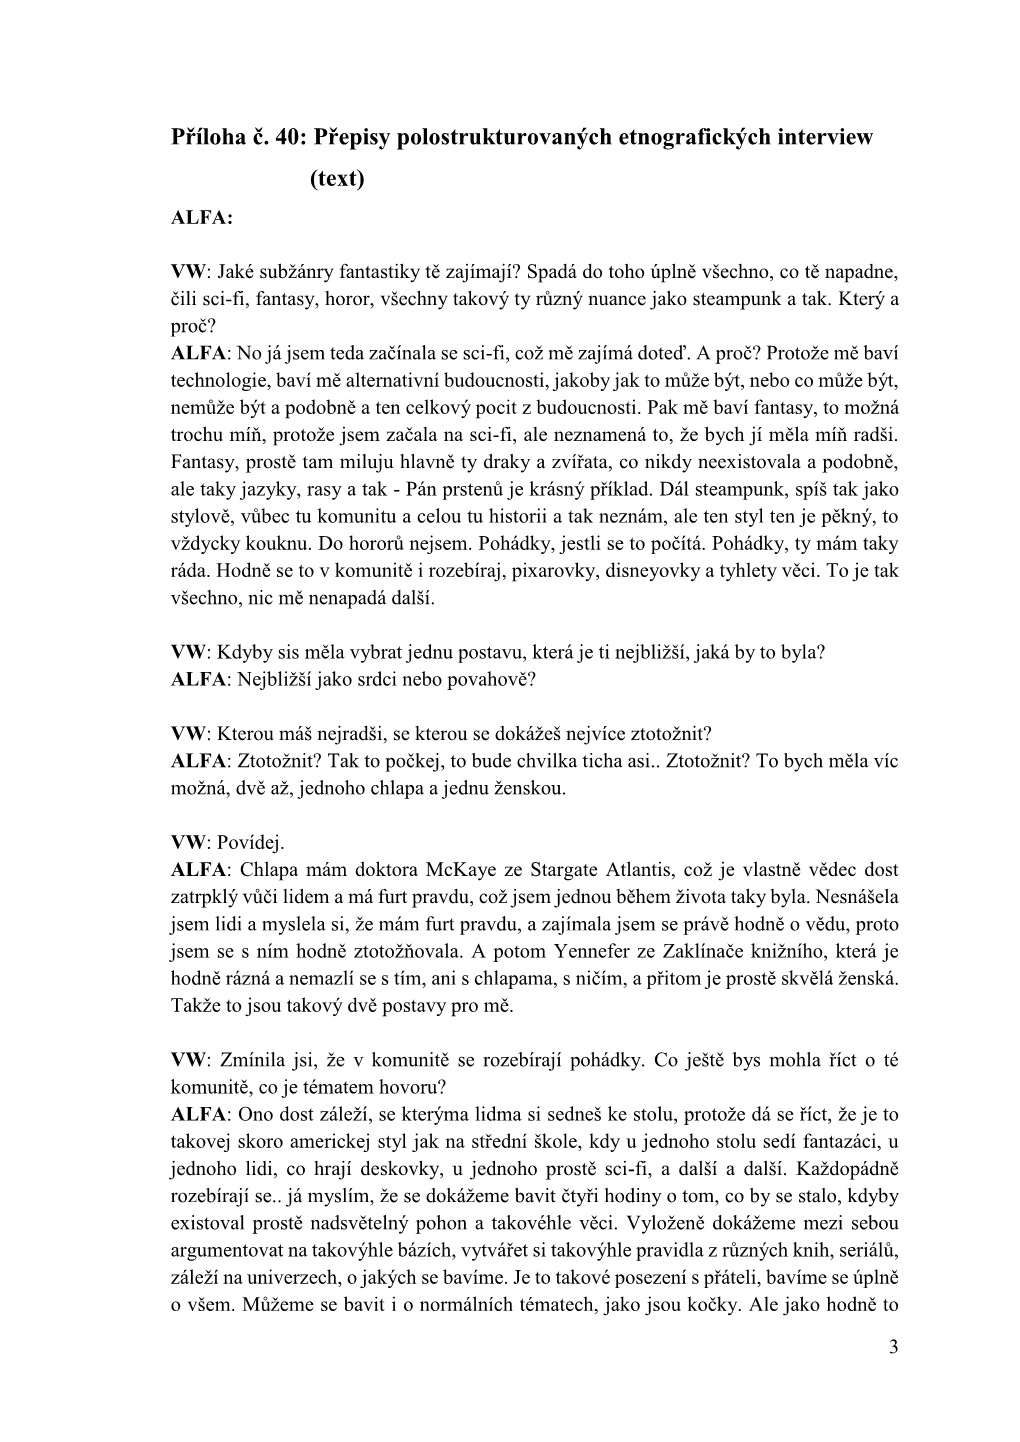 Přepisy Polostrukturovaných Etnografických Interview (Text) ALFA